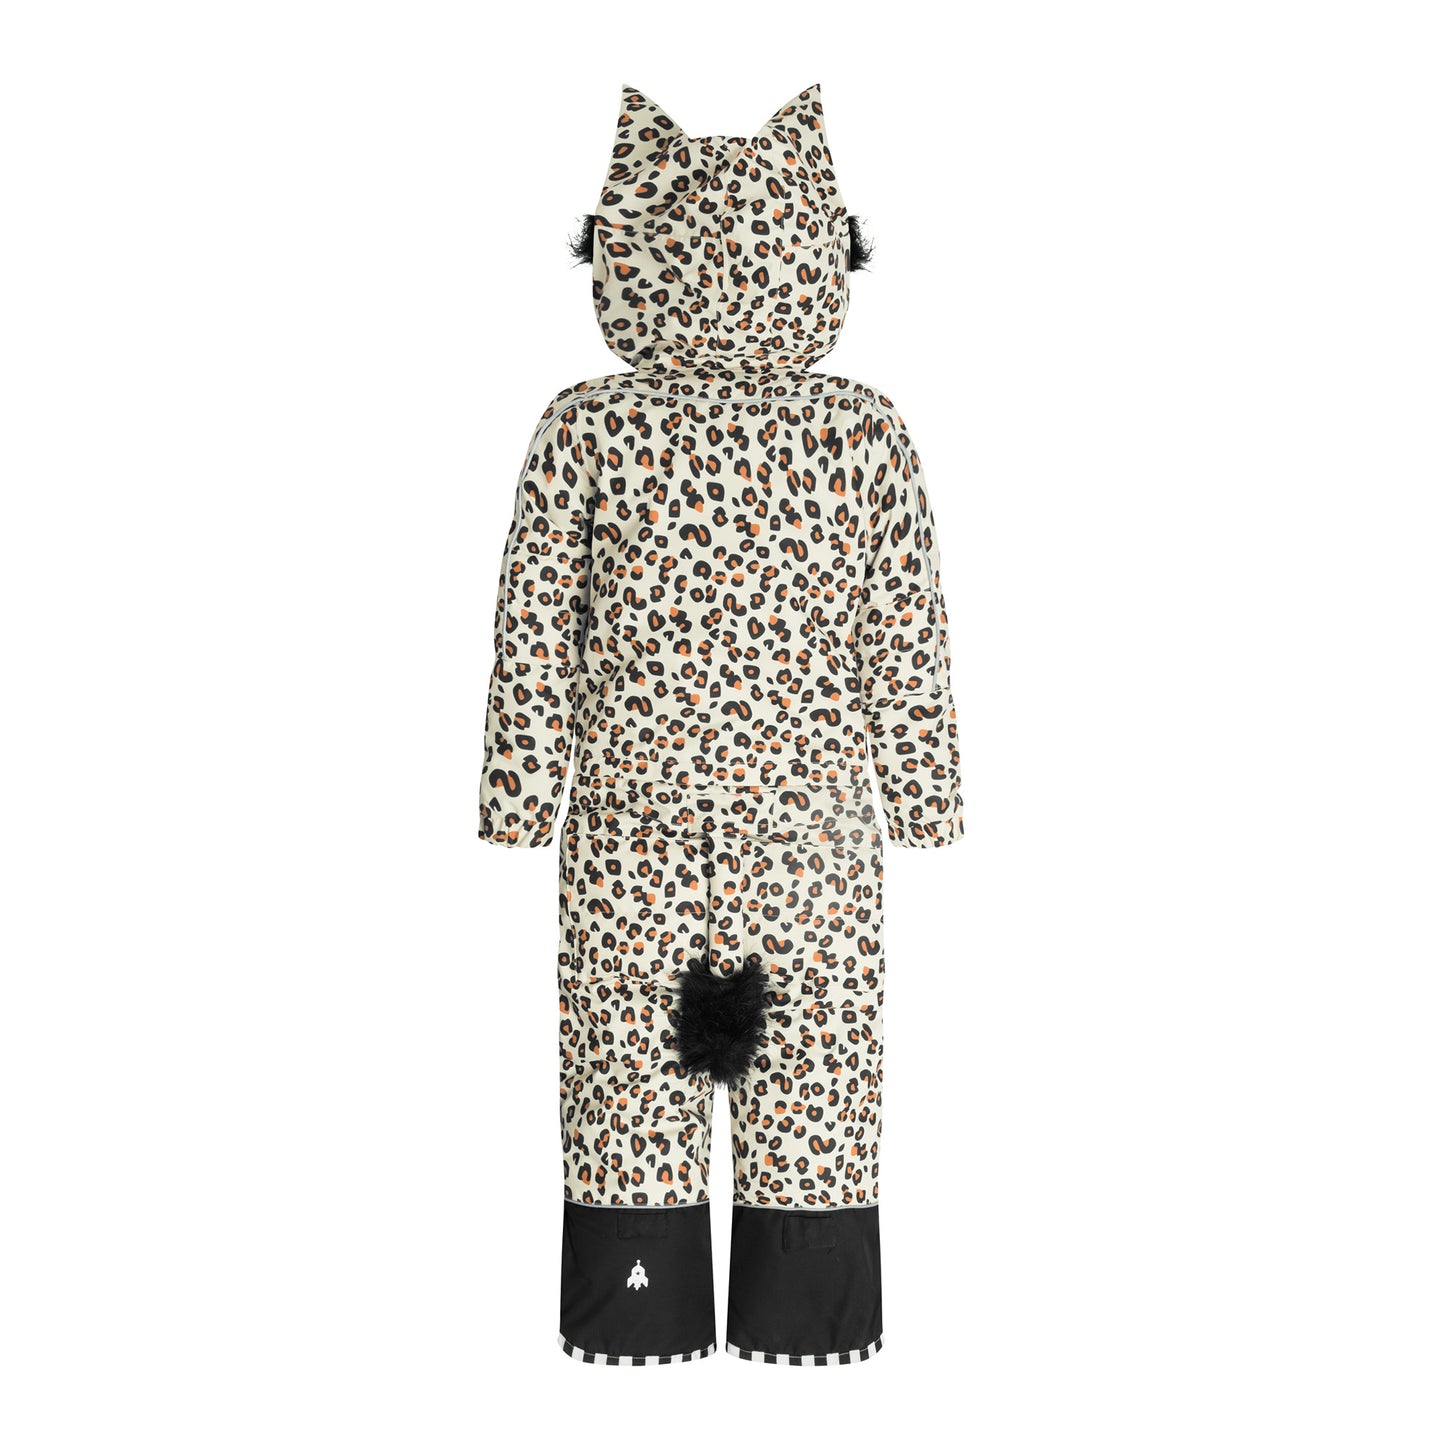 CheetaDo Black Belly Snowsuit